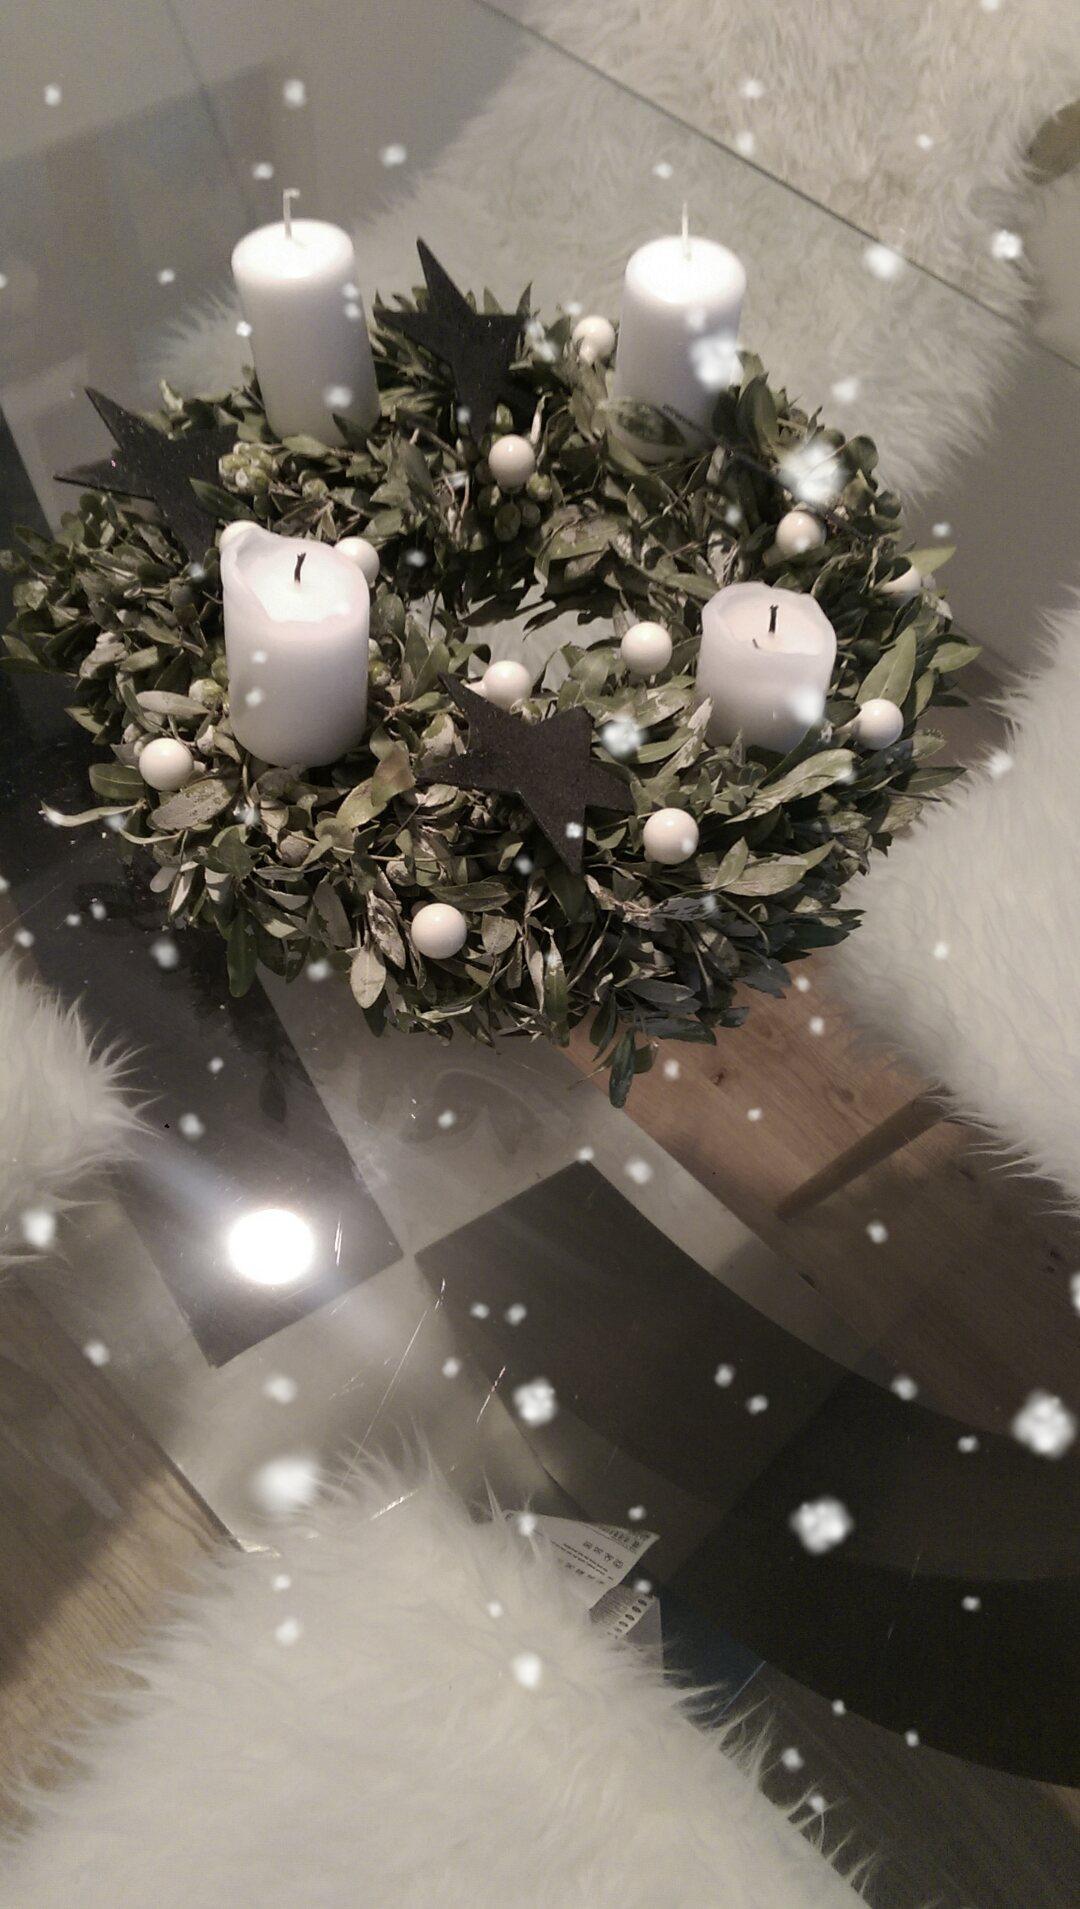 Christmas is all around

#White #love #Fell #schwarzweiß #schwarz #weiss #Schnee 